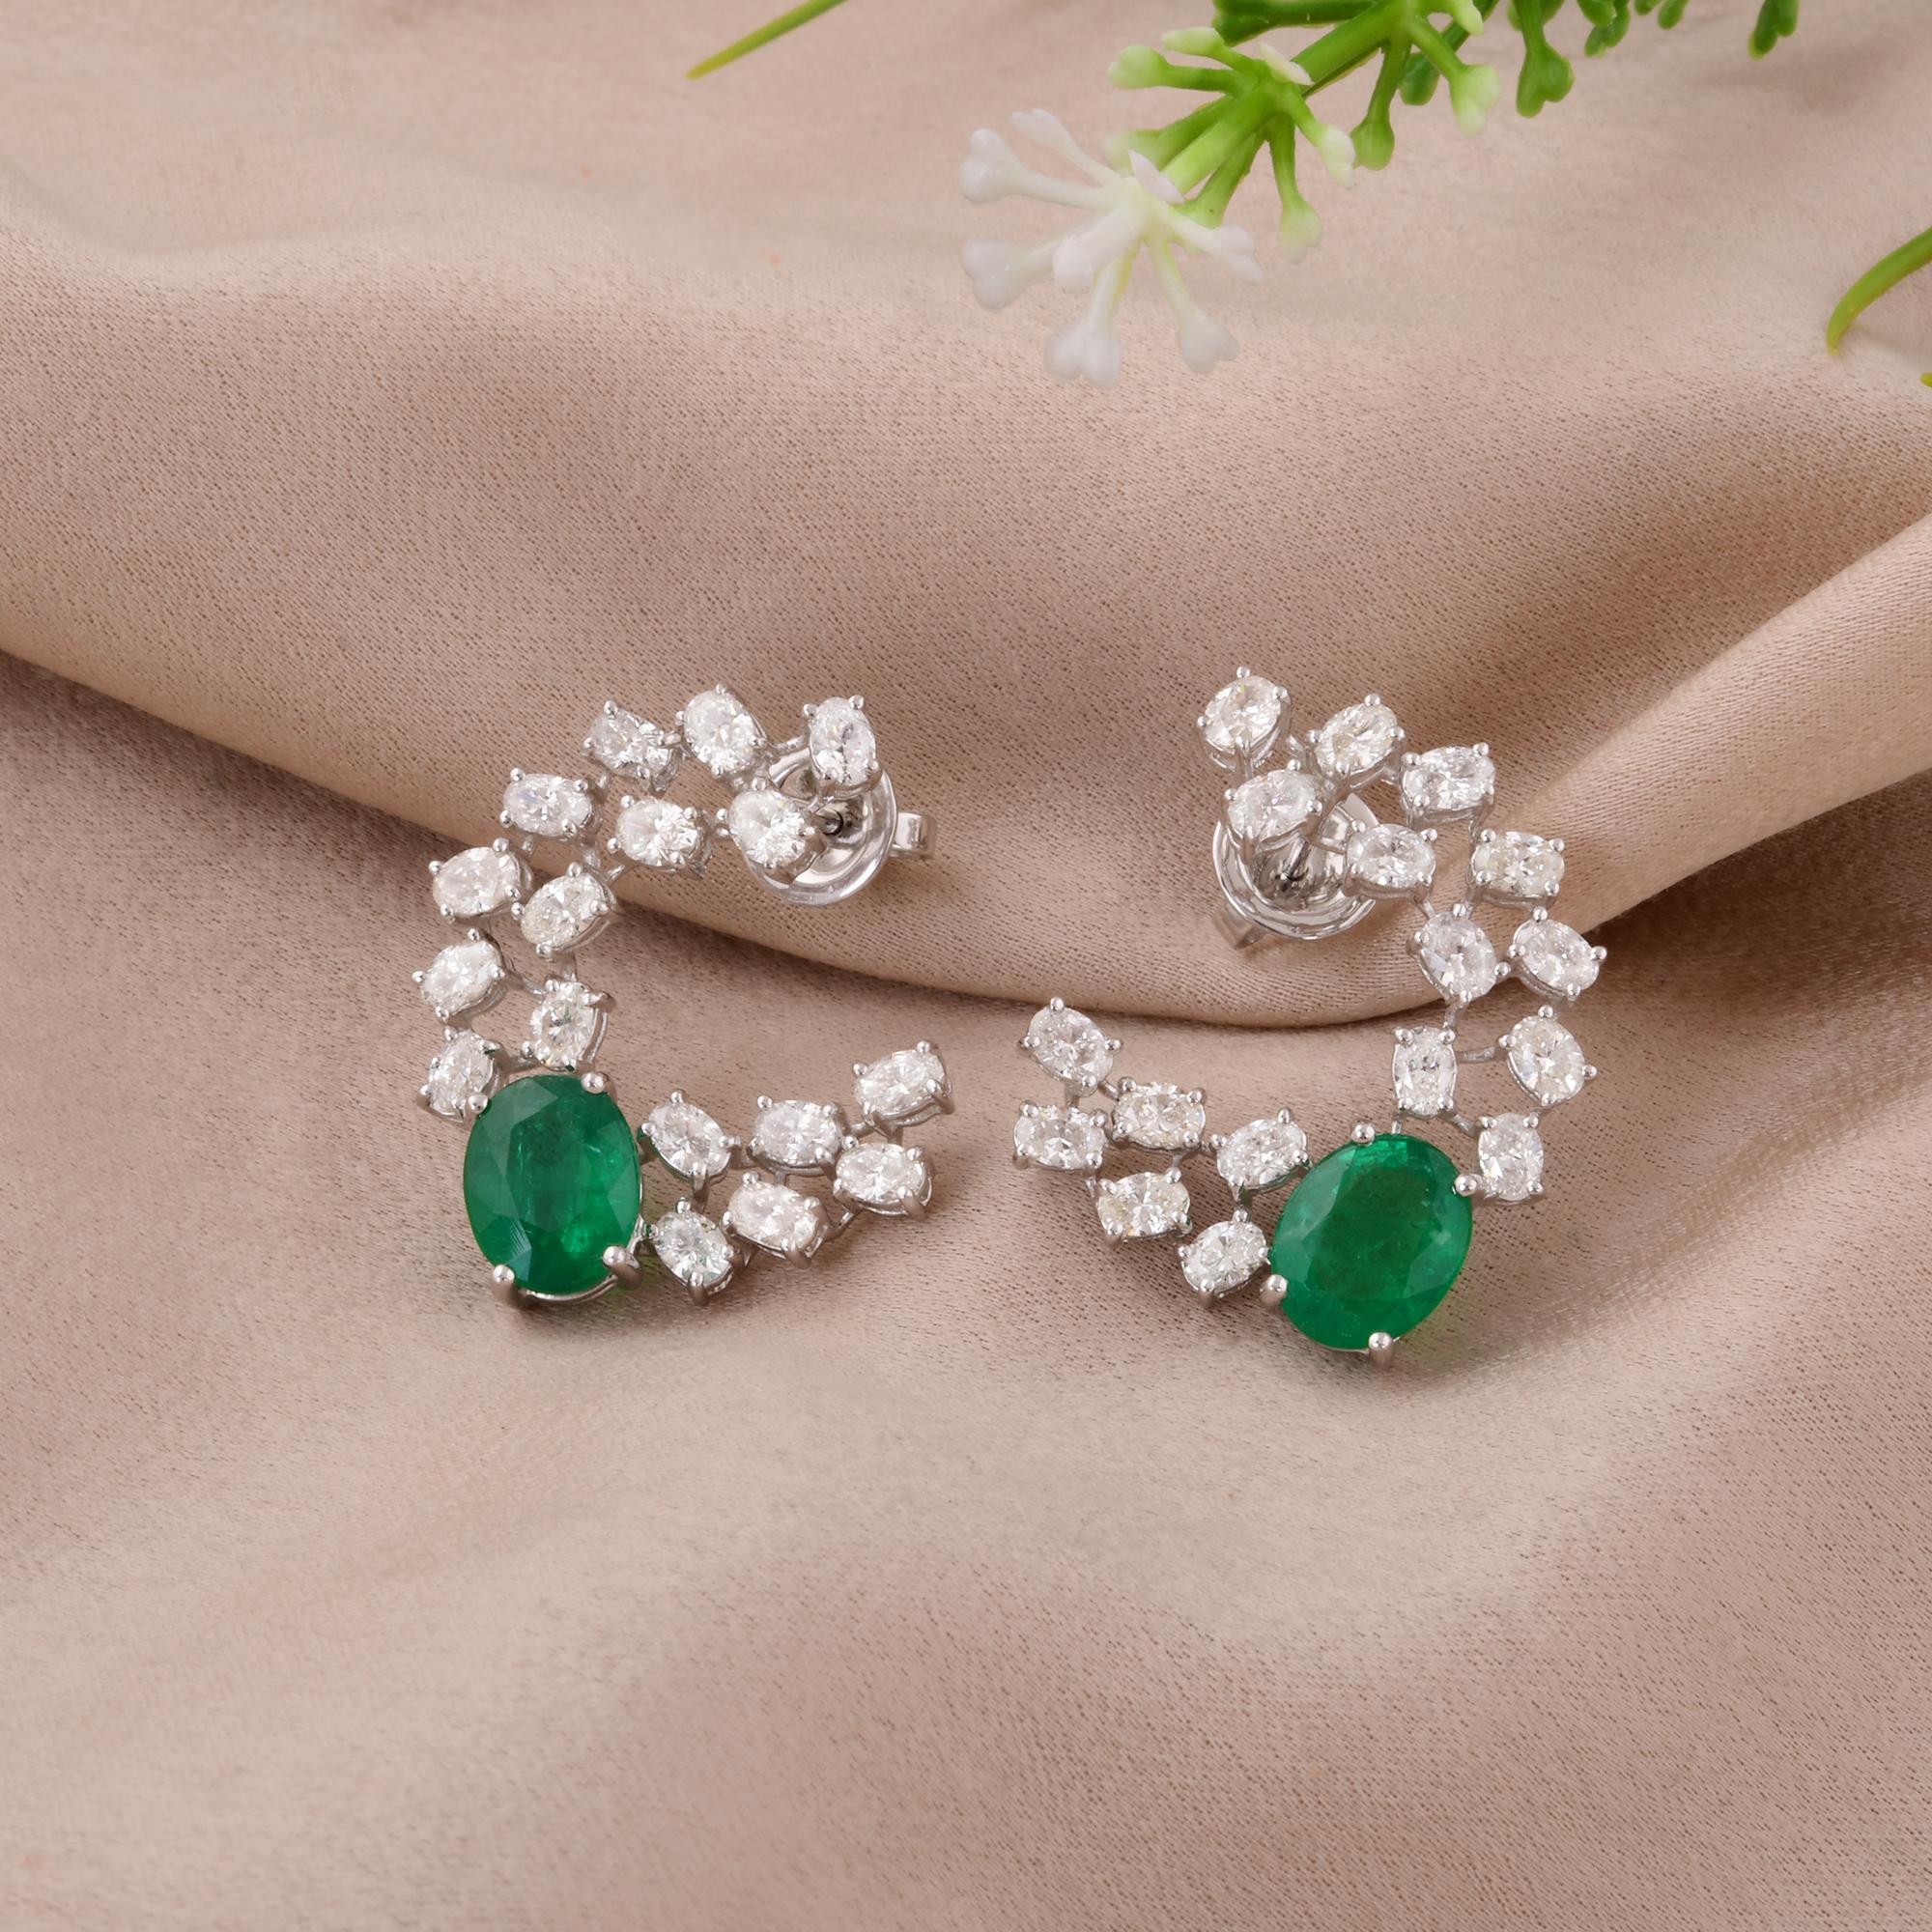 Oval Cut Zambian Emerald Gemstone Earrings Oval Diamond 18 Karat White Gold Fine Jewelry For Sale